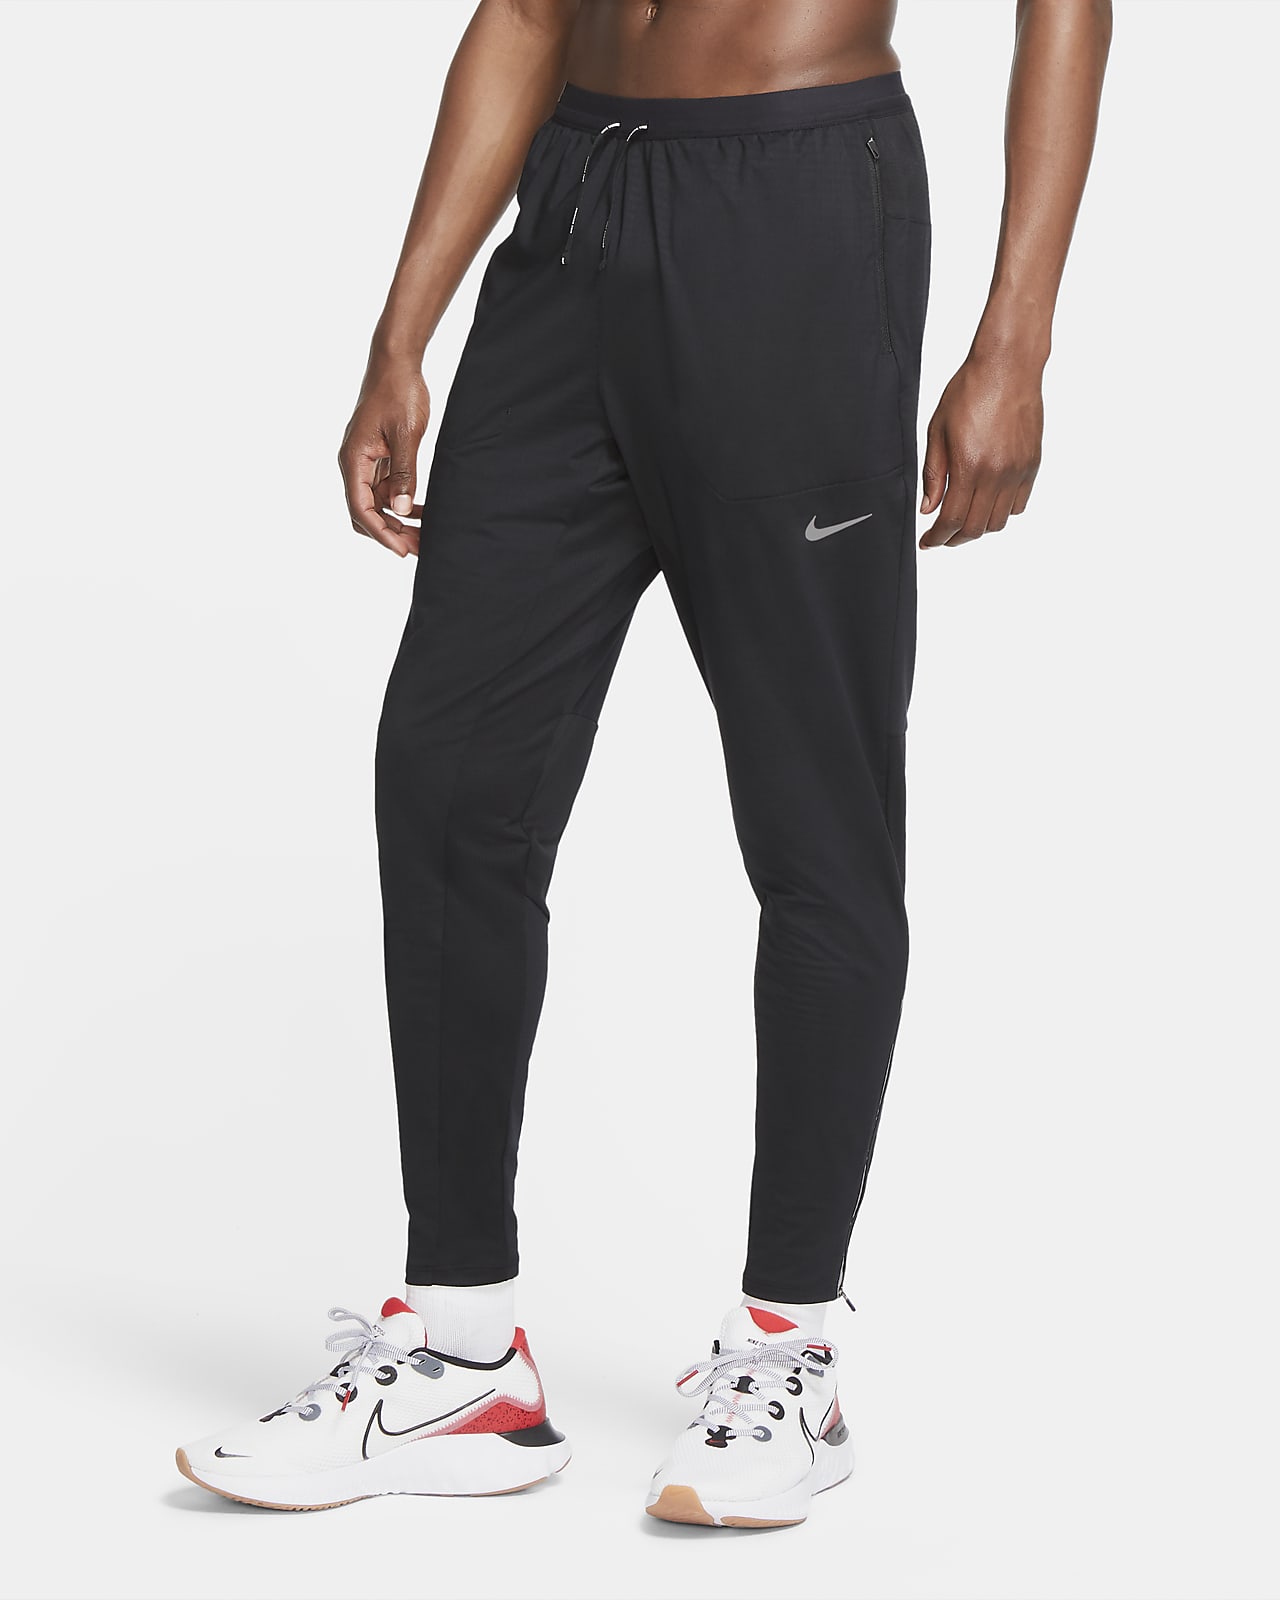 Nike Phenom Elite Men's Knit Running Pants.